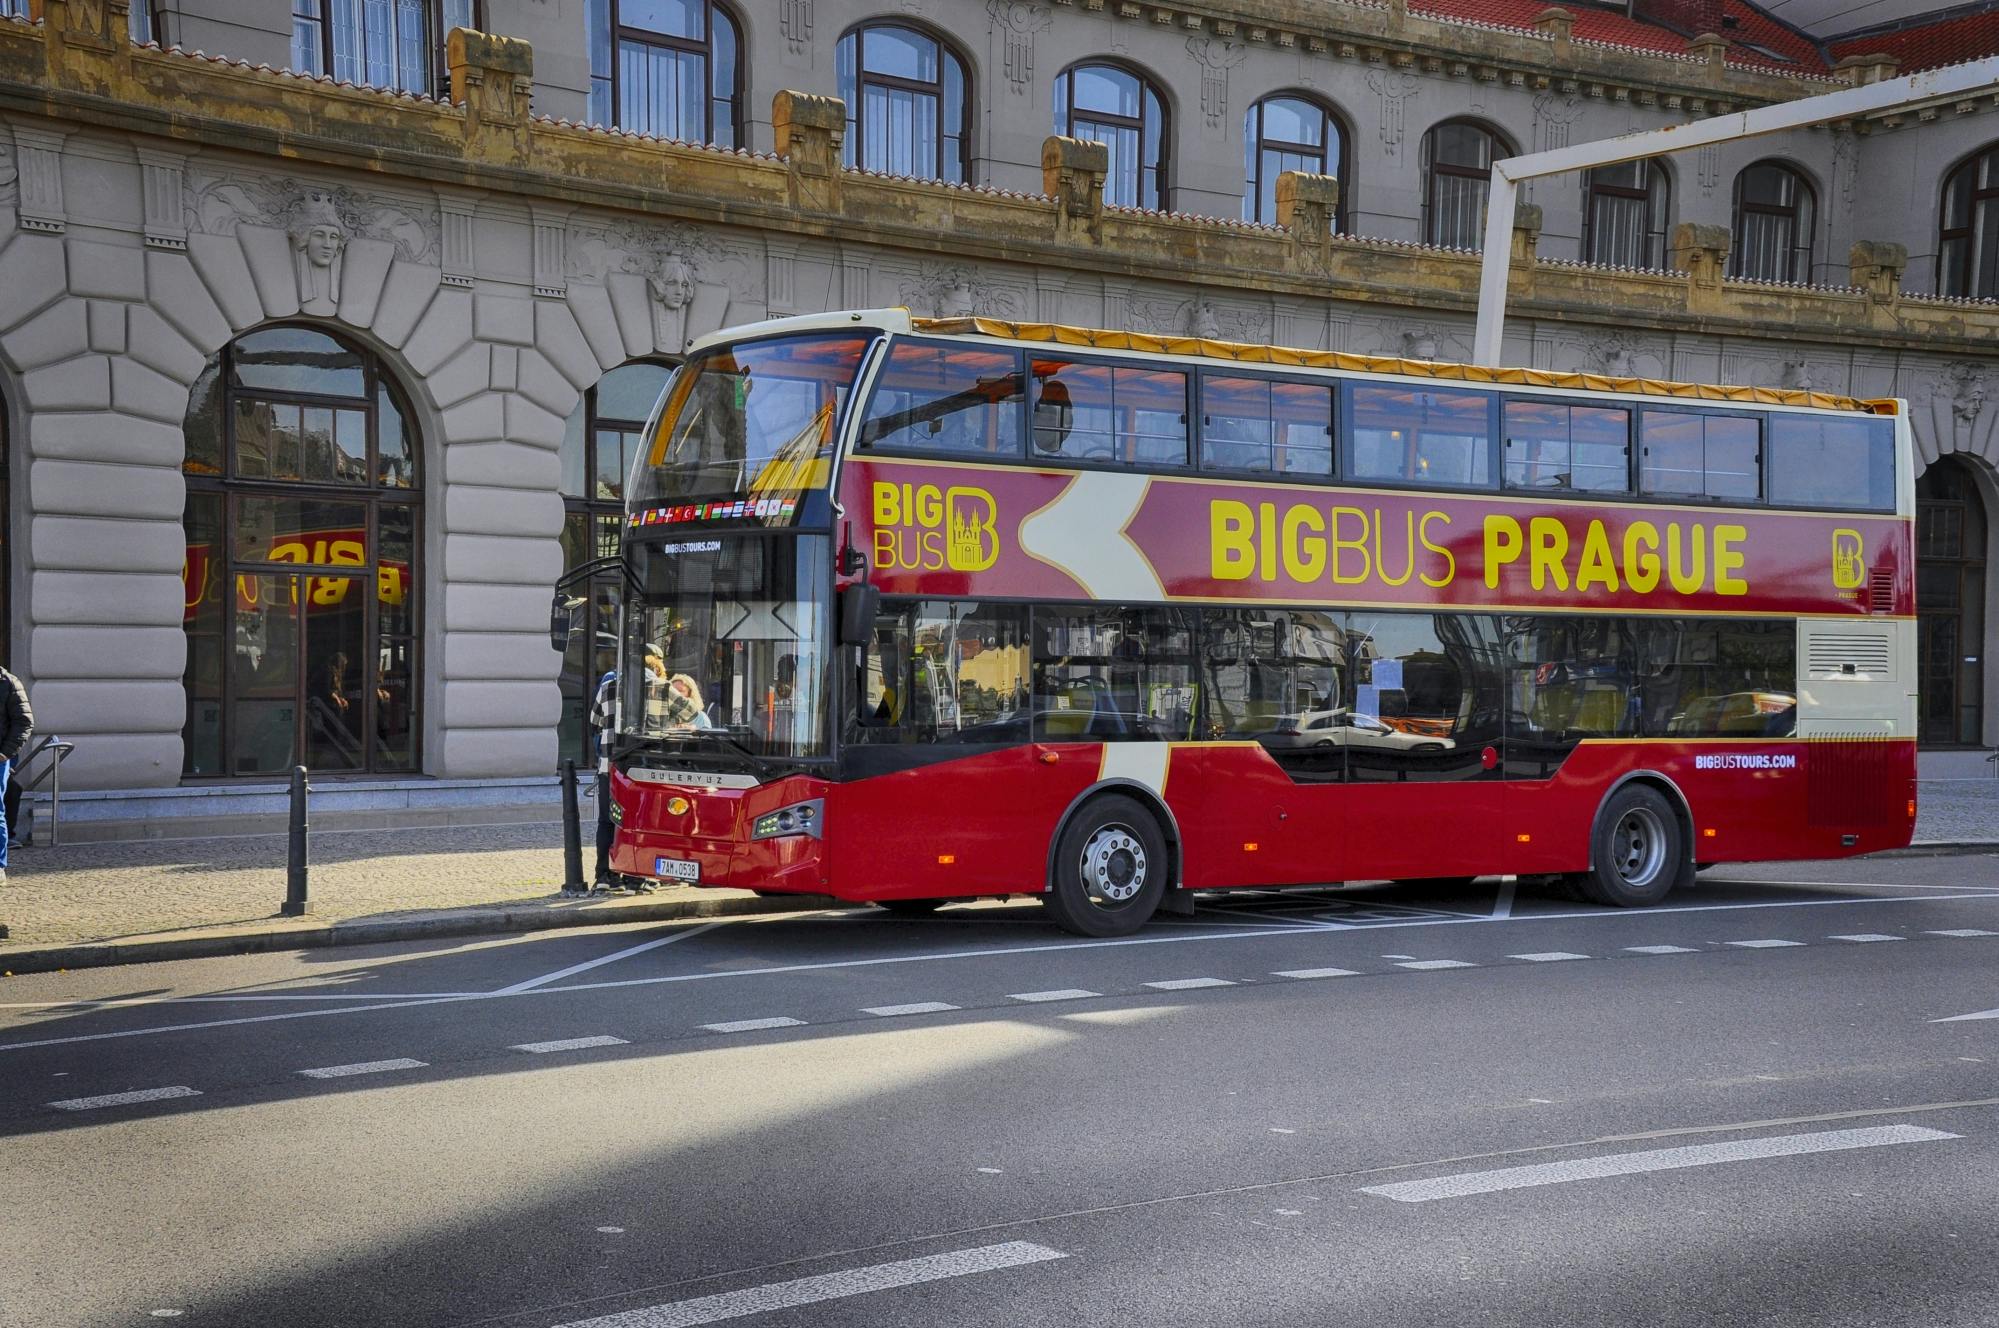 Wycieczka autobusowa Big Bus po Pradze z możliwością wsiadania i wysiadania na dowolnych przystankach